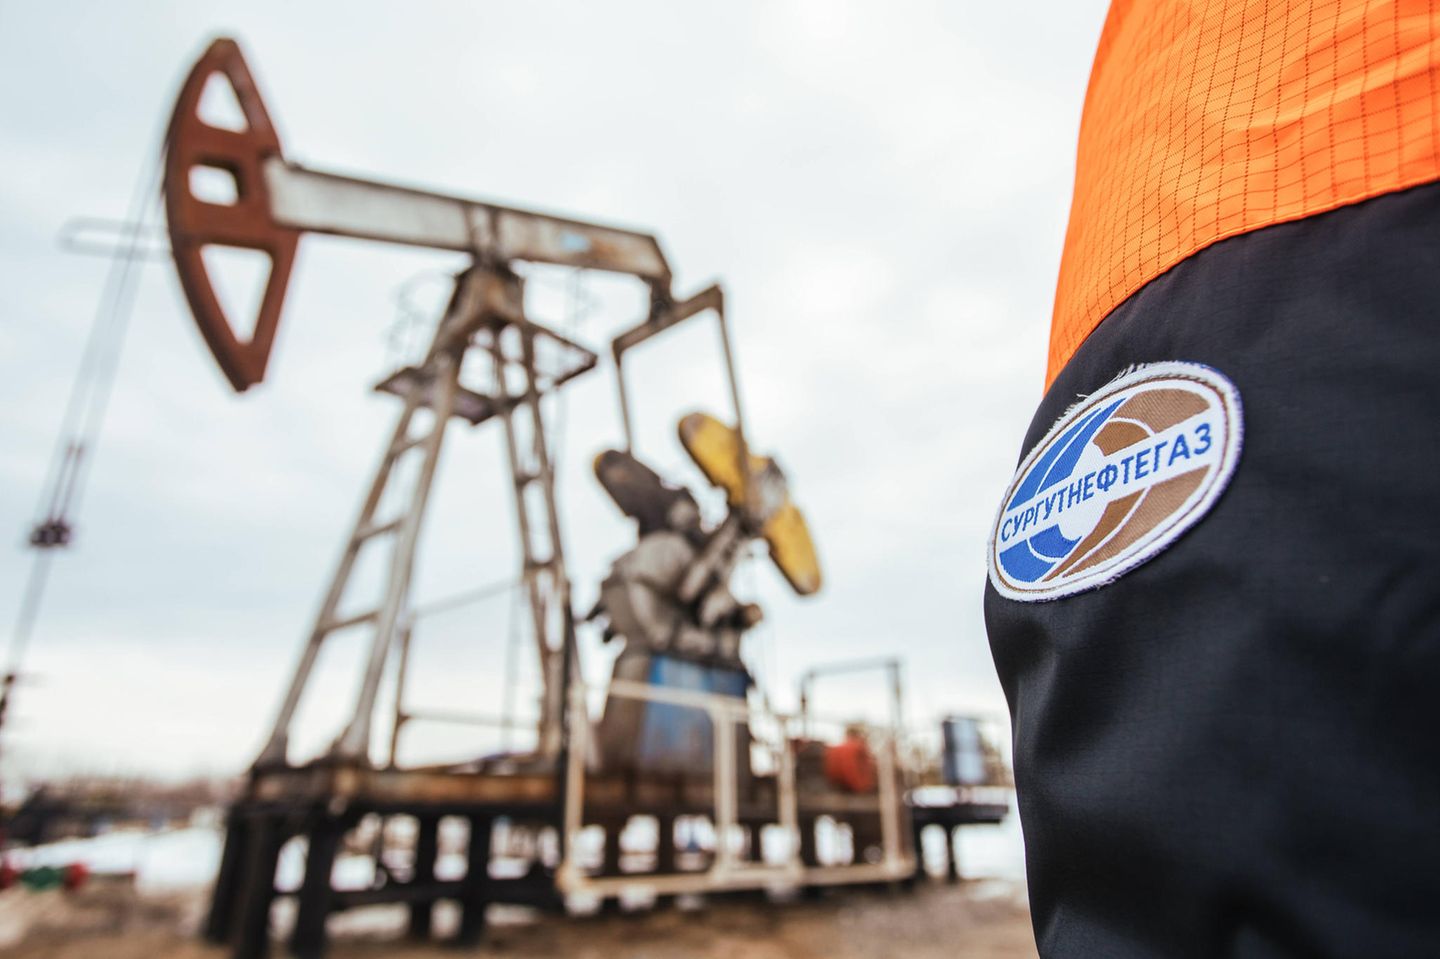 Surgutneftegas ist einer der größten Gas- und Ölkonzerne Russlands. Der norwegische Pensionsfonds hielt Ende 2021 Anteile im Wert von 688,4 Mio. Kronen an dem Unternehmen mit Hauptsitz im sibirischen Surgut.